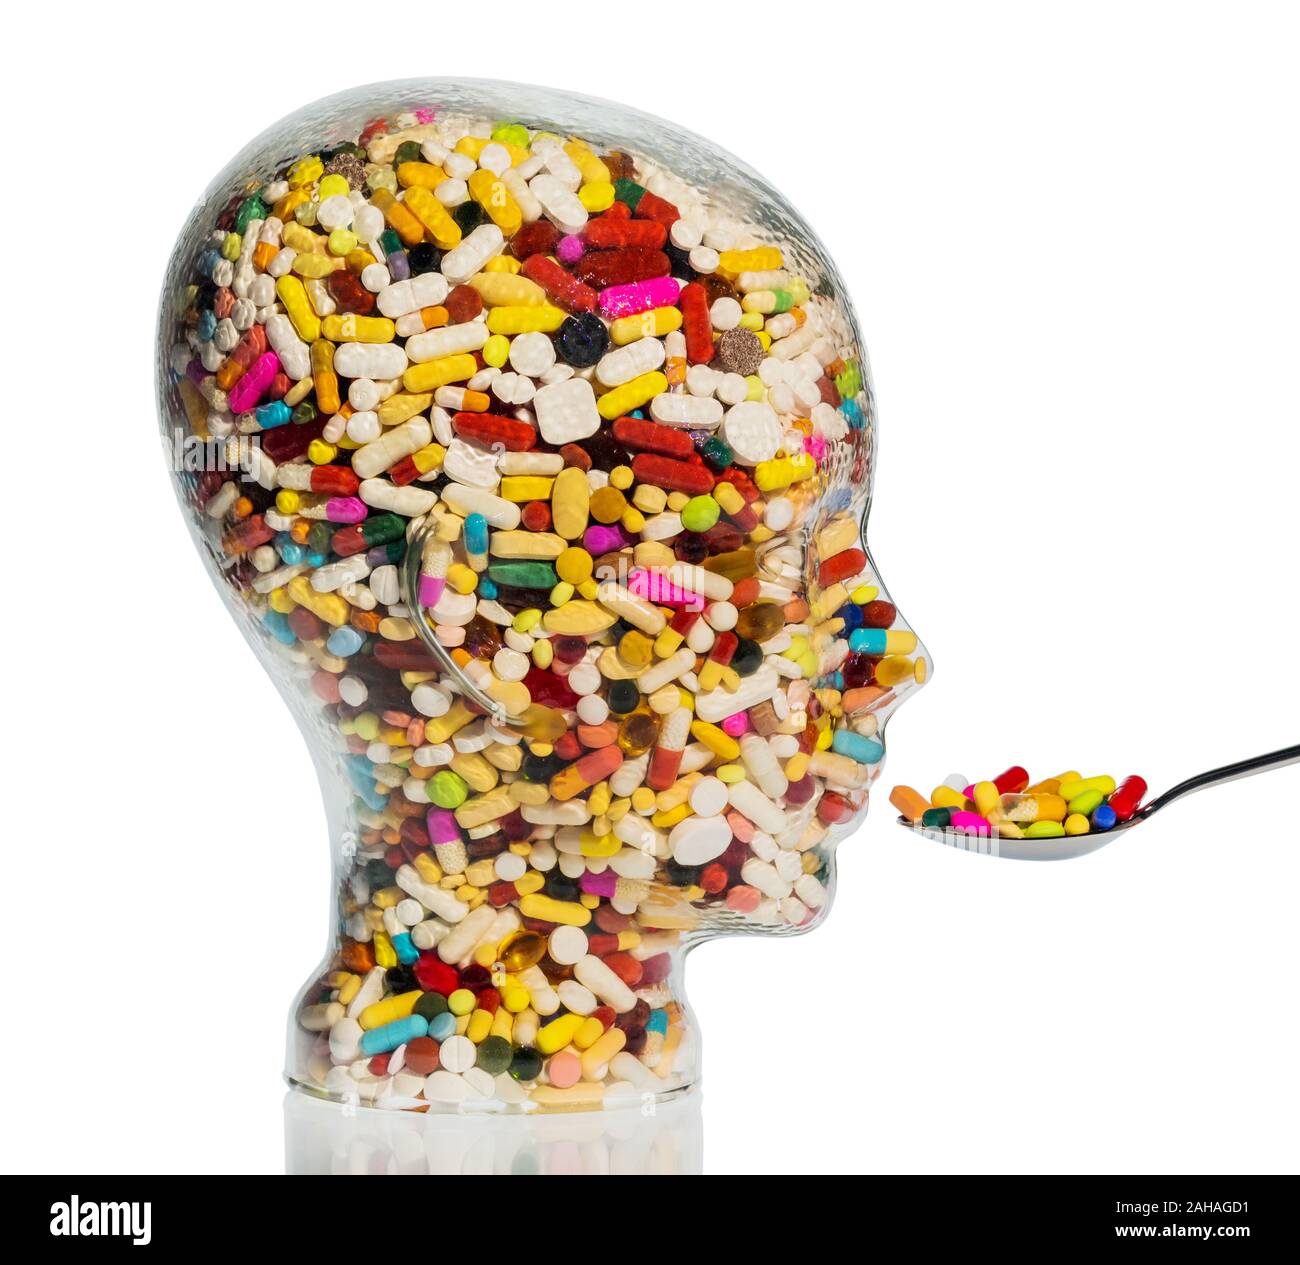 Glaskopf mit bunten Tabletten, Symbolfoto für Medizin, Heilmittel und Tablettensucht Stock Photo